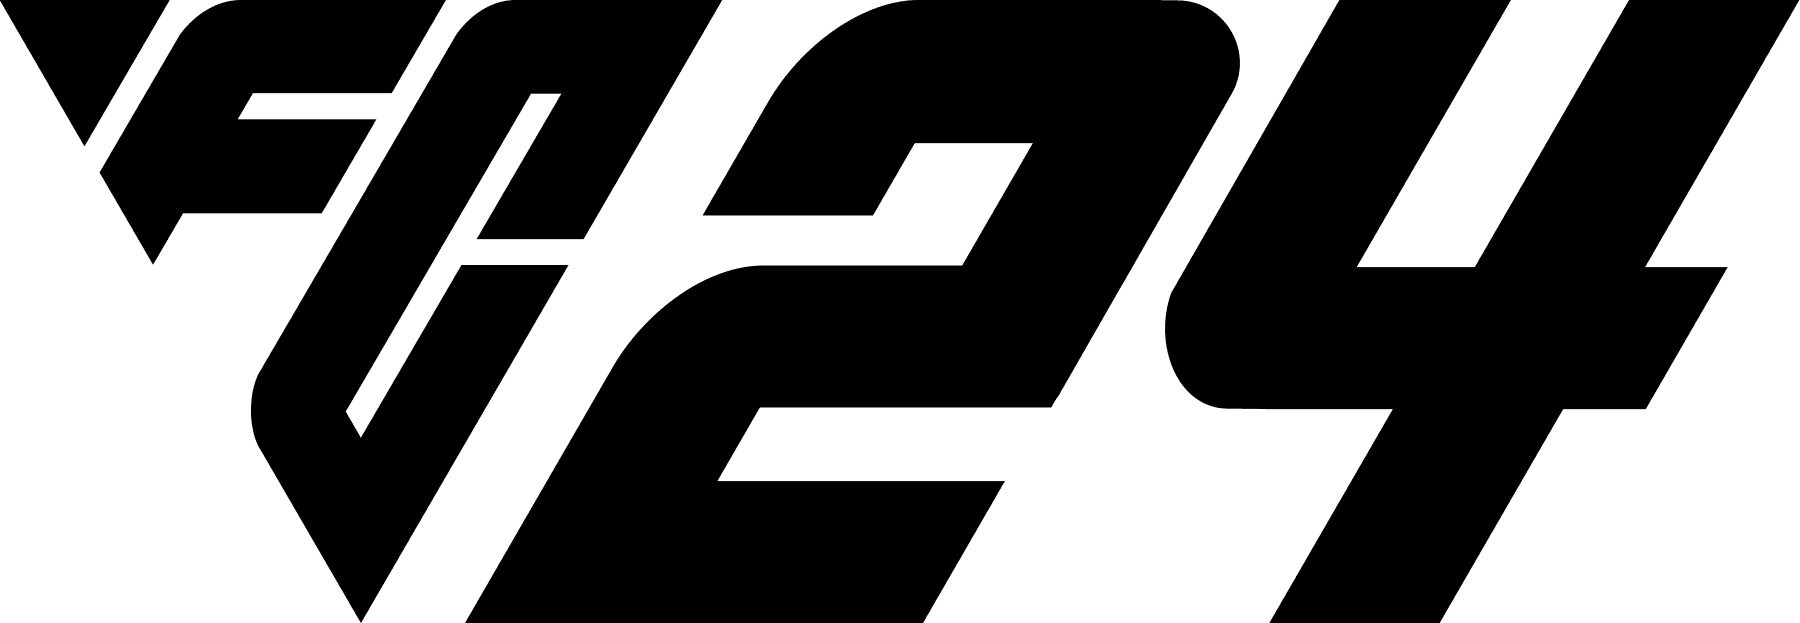 FC 24 ロゴ (EA スポーツ FC) – FIFPlay - Gamingdeputy Japan